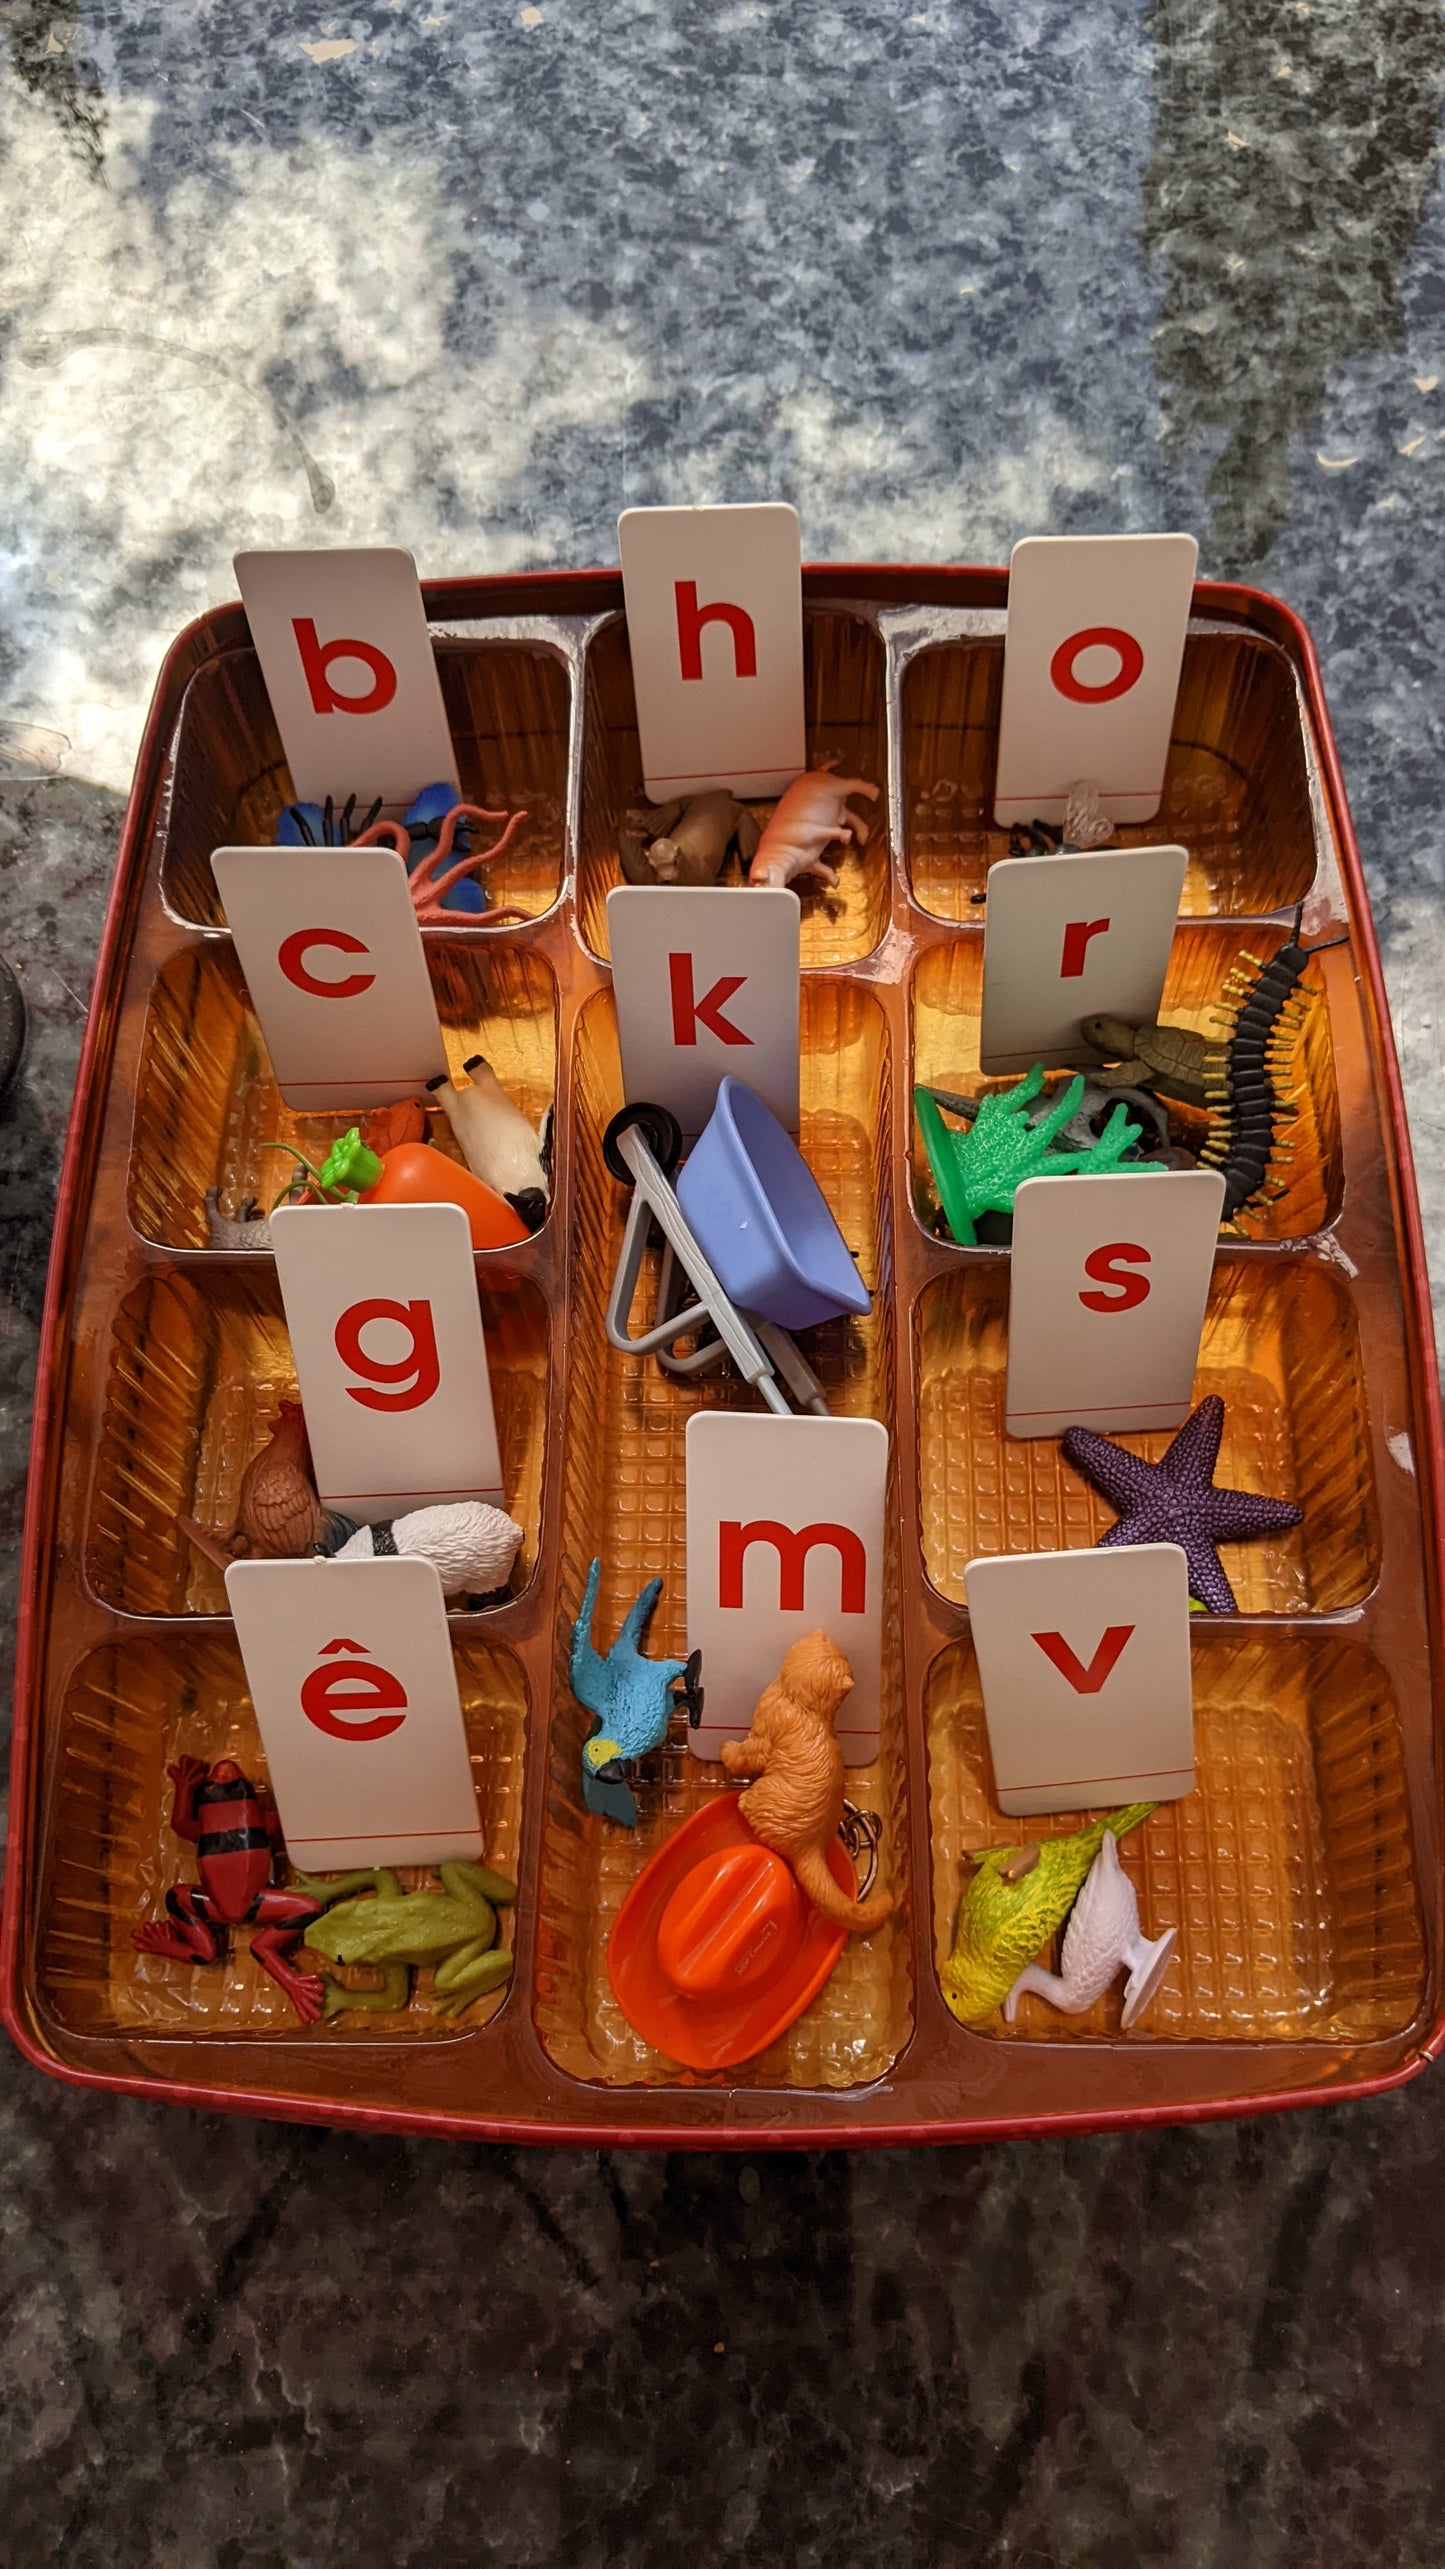 Hộp Thẻ Học Cụ Montessori: Làm Quen Với Chữ Cái Tiếng Việt - Bước Đầu Đến Với Toán Học (Vietnamese Montessori sand letters + numbers learning box)